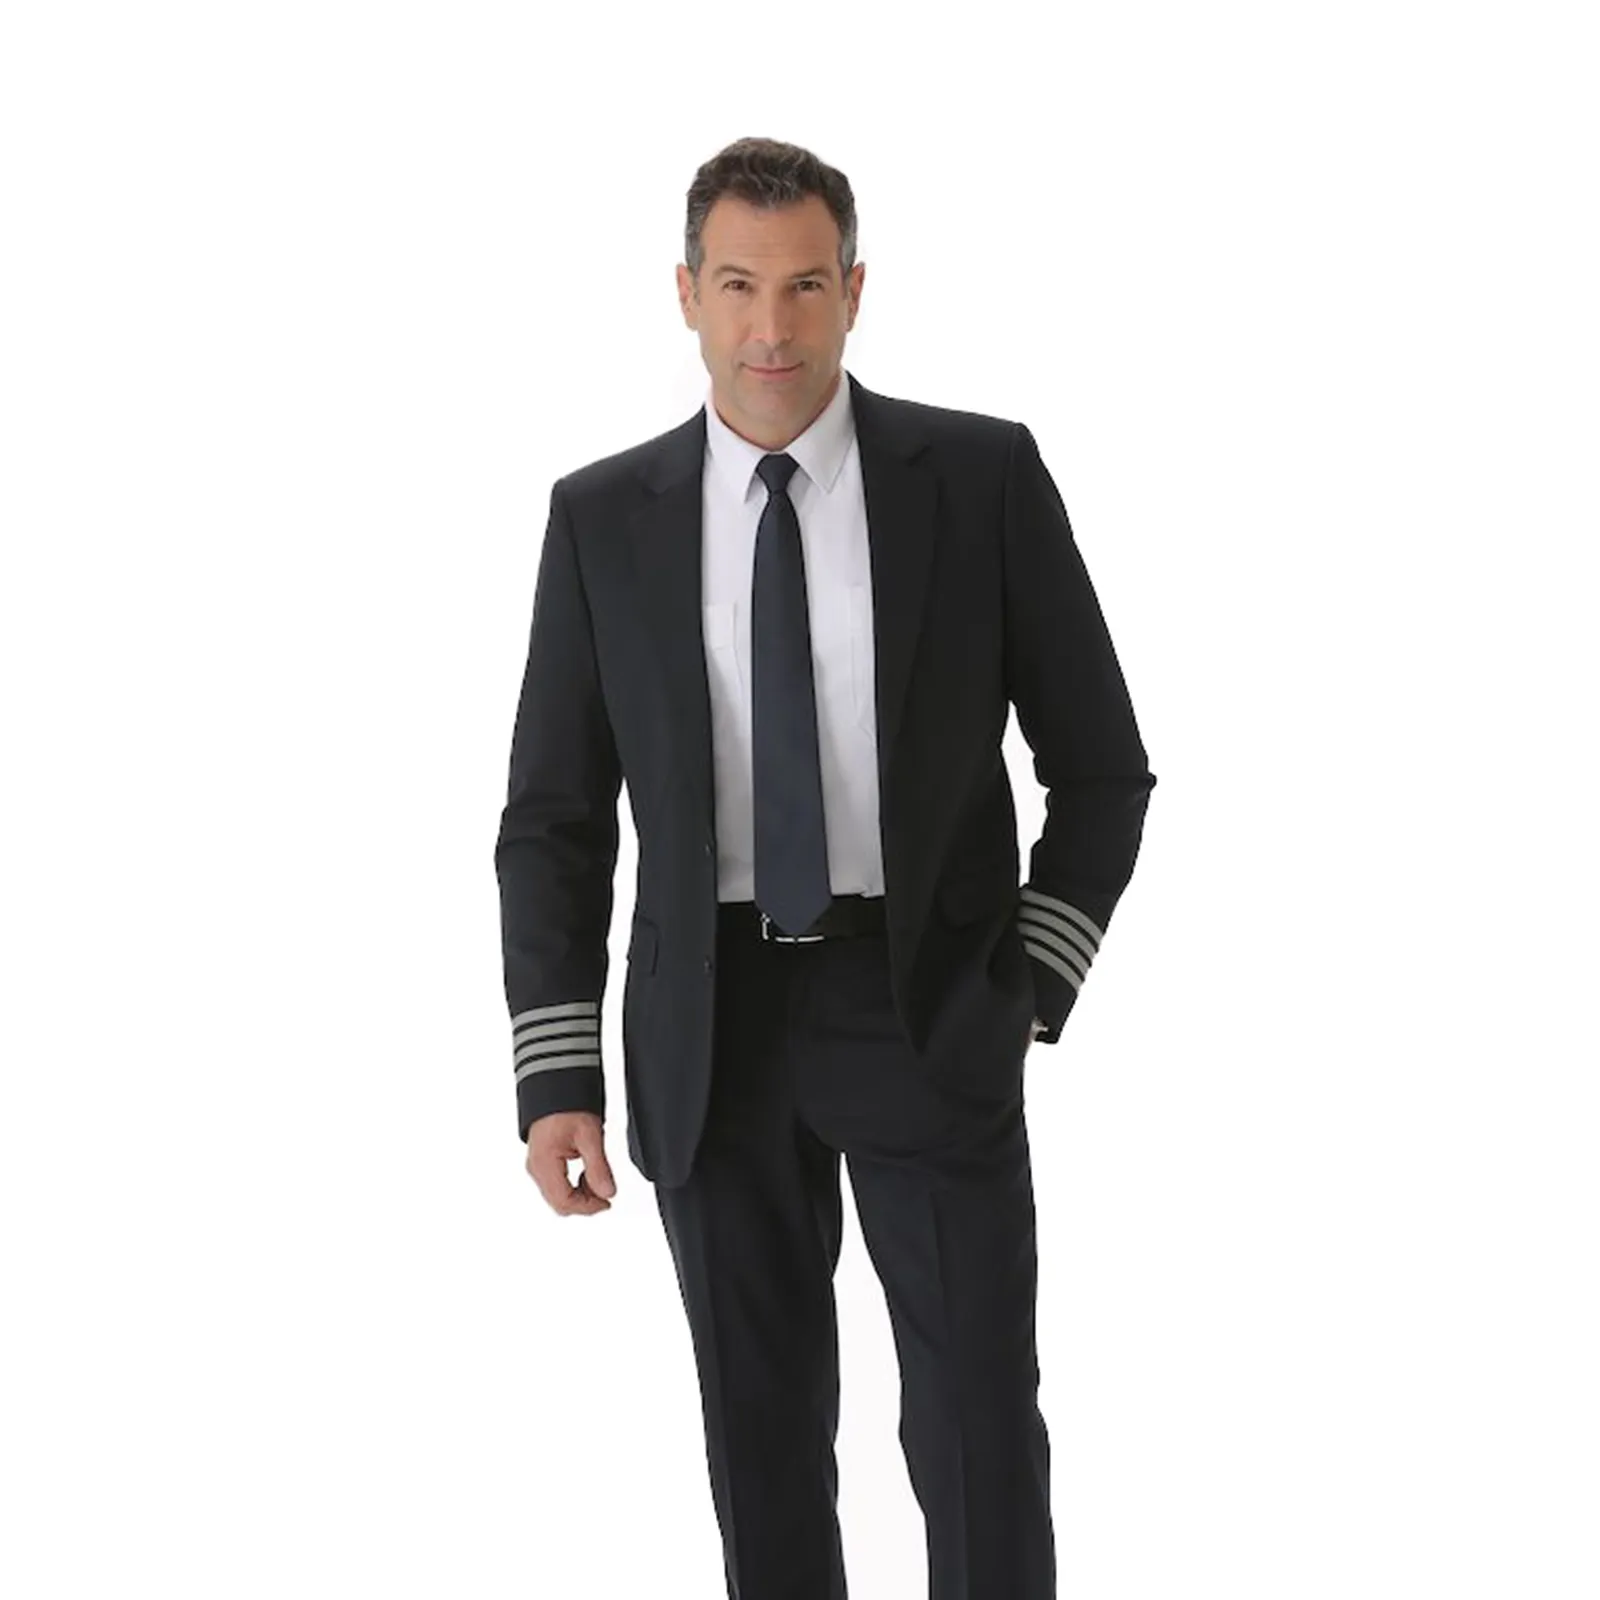 Airline Uniforms Airline Pilot Uniform Blazer Suit With Pictures